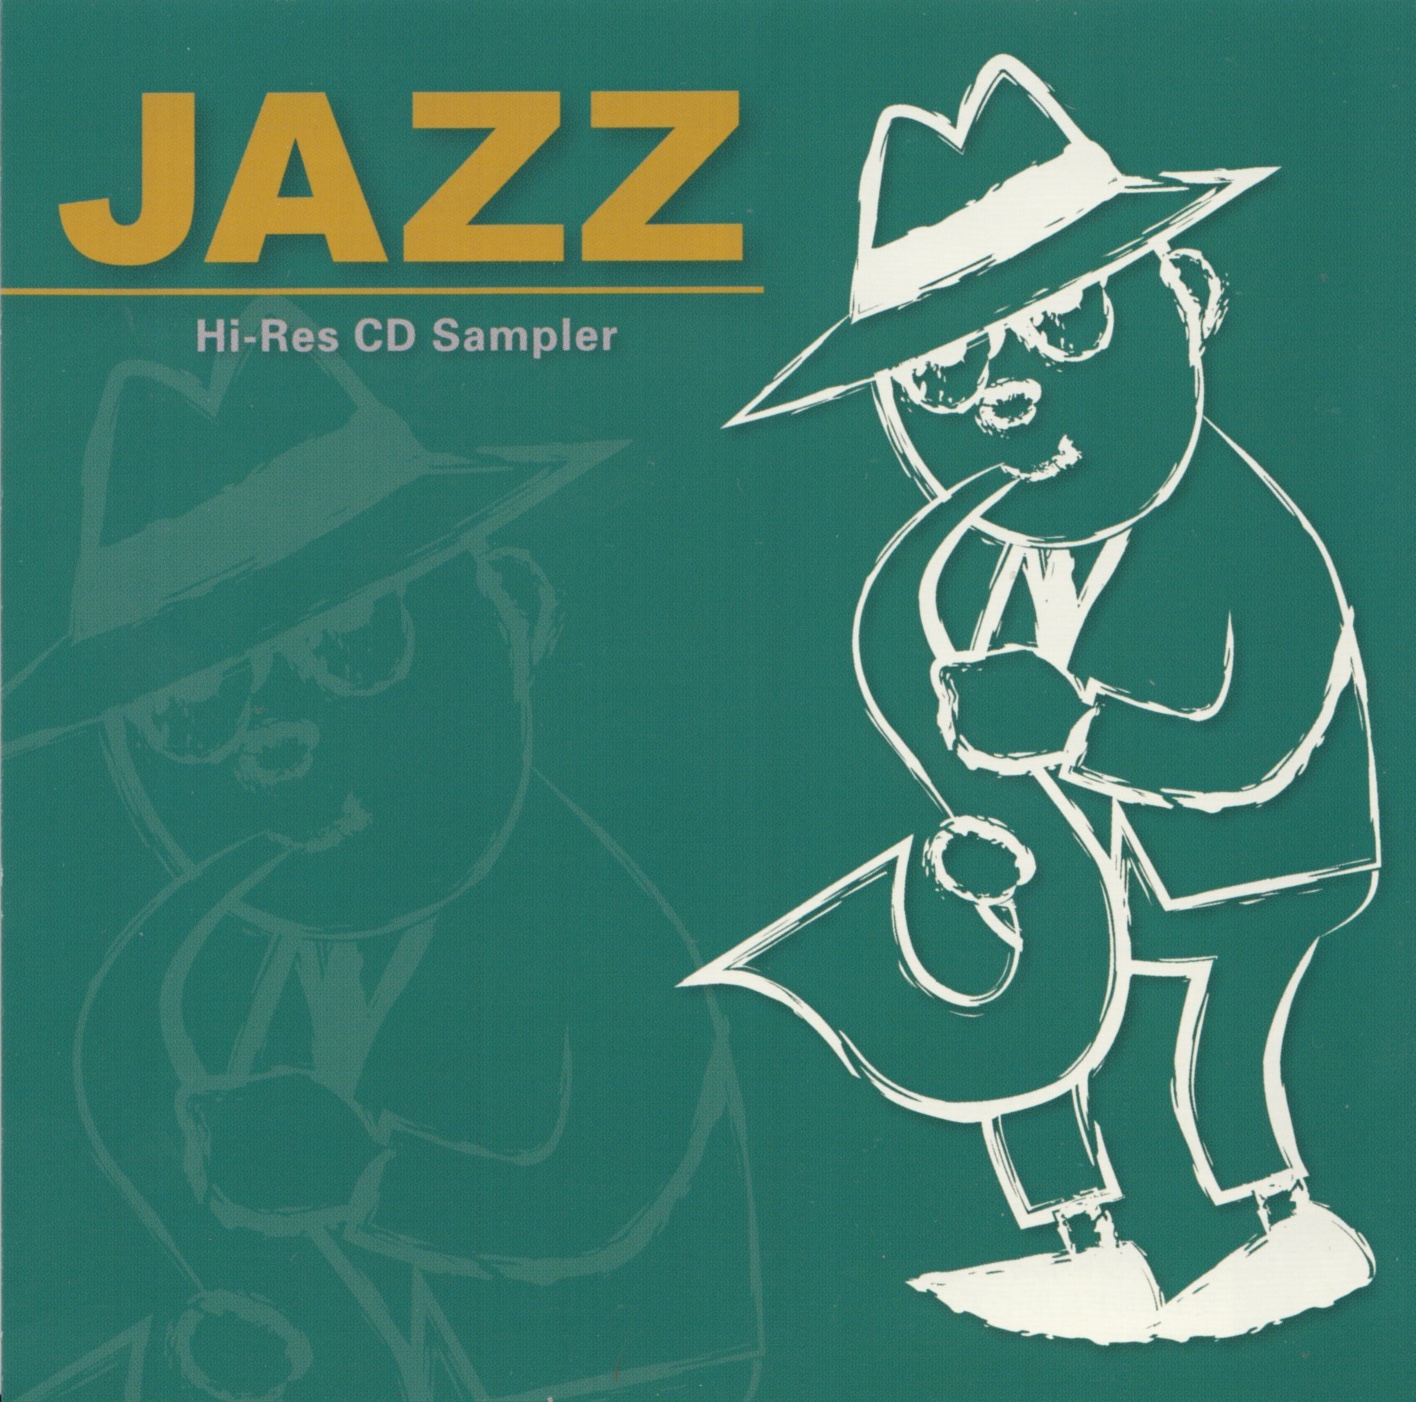 CD Jazz. Ska Jazz диски. CD диск джаз Hi Fi. Various artists - SACD Sampler 3 Jazz.